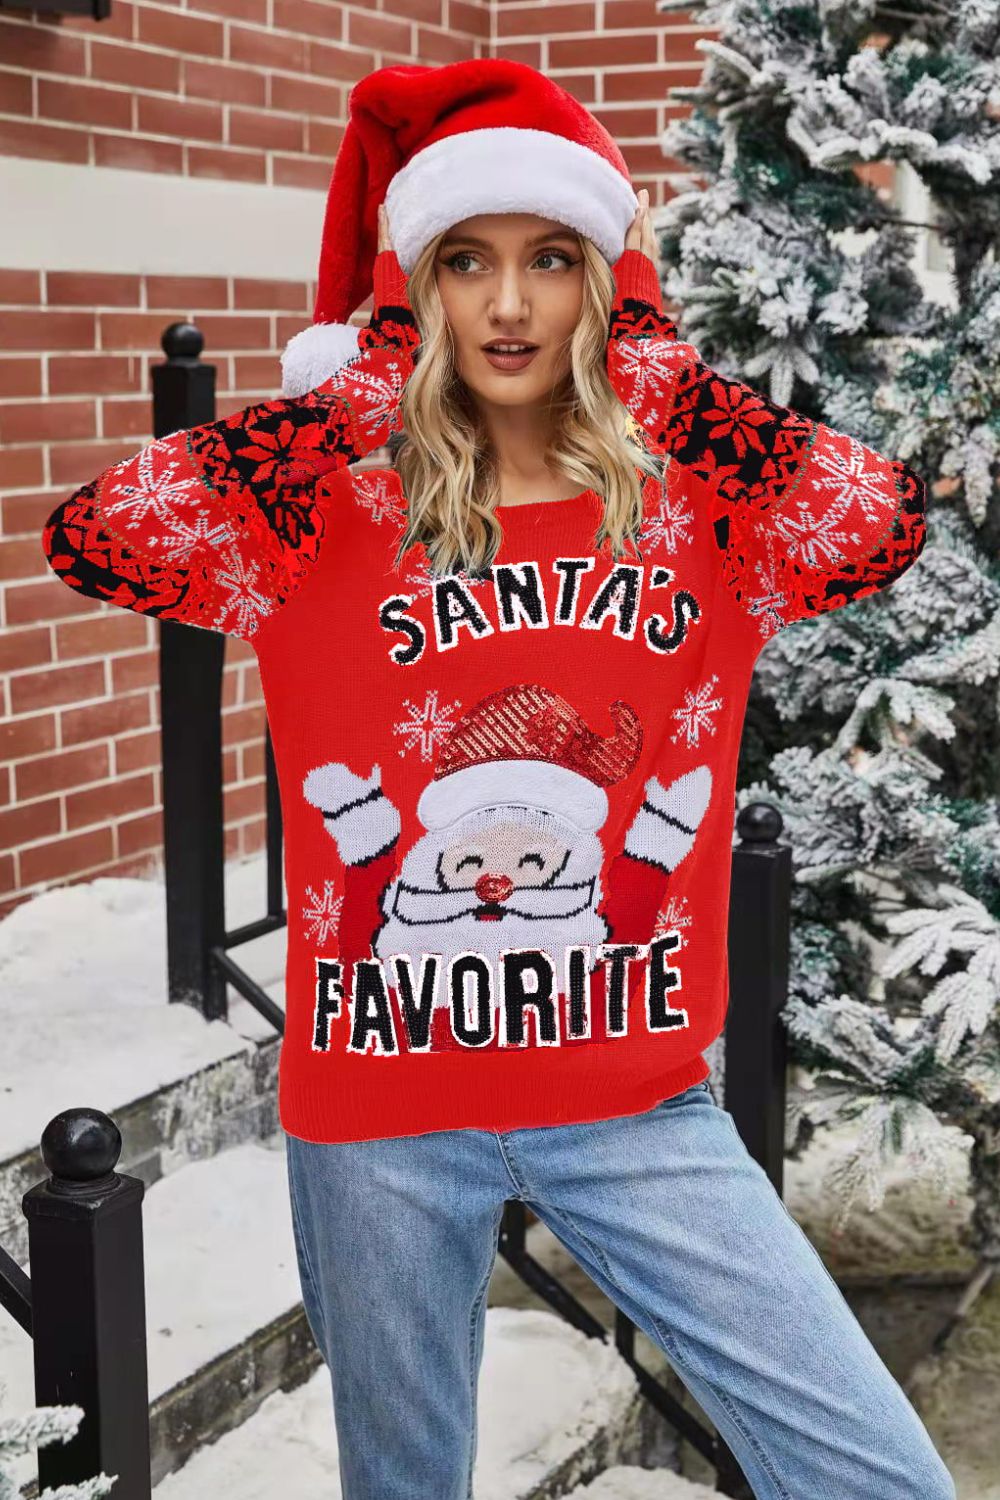 Ugly Christmas Sweater Santa Riding Salmon Fishing xmas - Santa